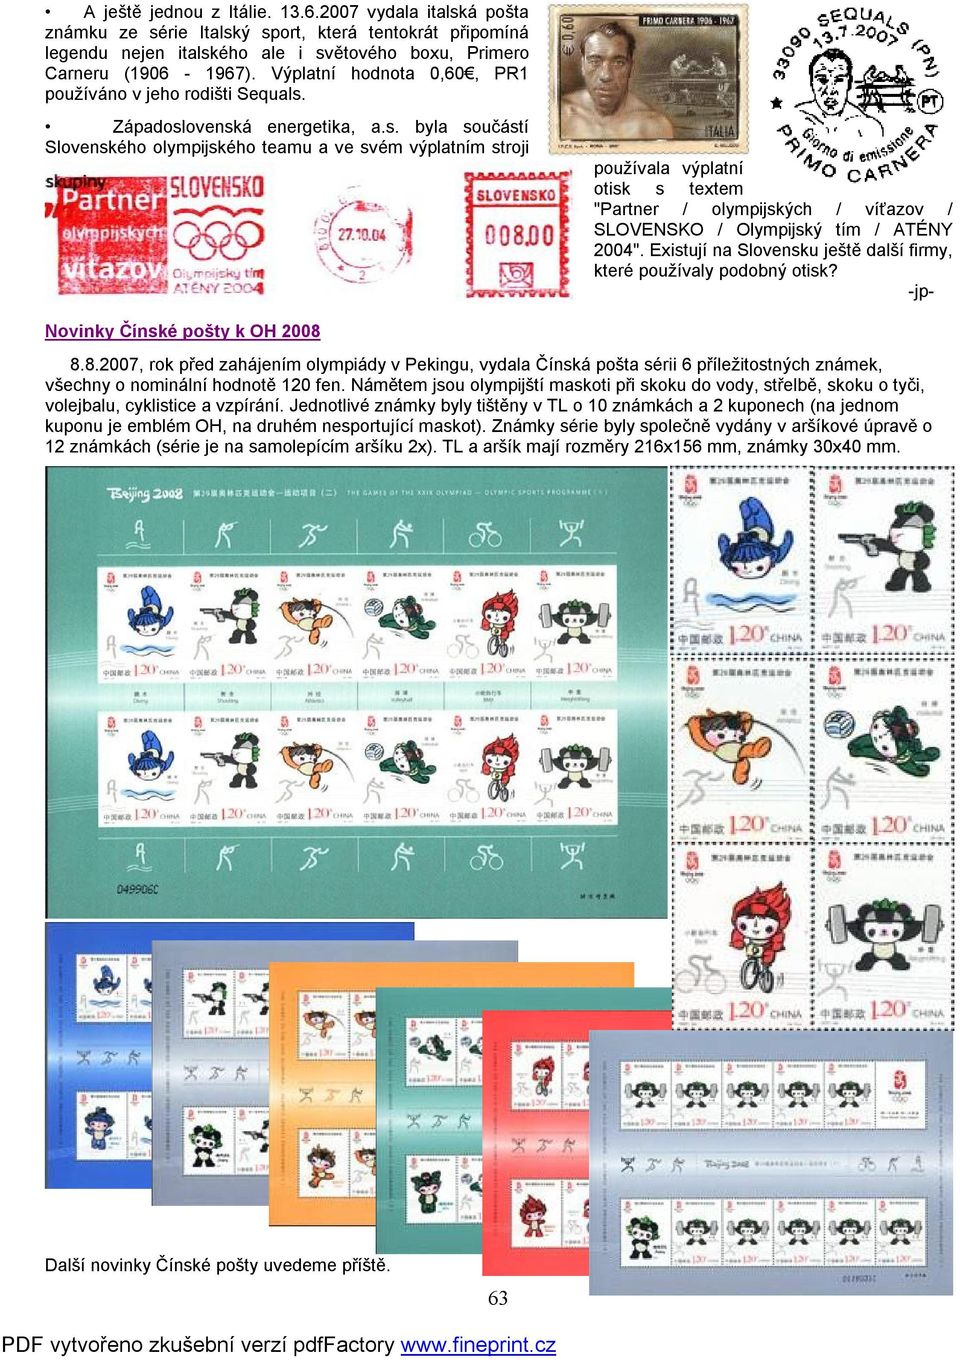 Západoslovenská energetika, a.s. byla součástí Slovenského olympijského teamu a ve svém výplatním stroji používala výplatní otisk s textem "Partner / olympijských / víťazov / SLOVENSKO / Olympijský tím / ATÉNY 2004".